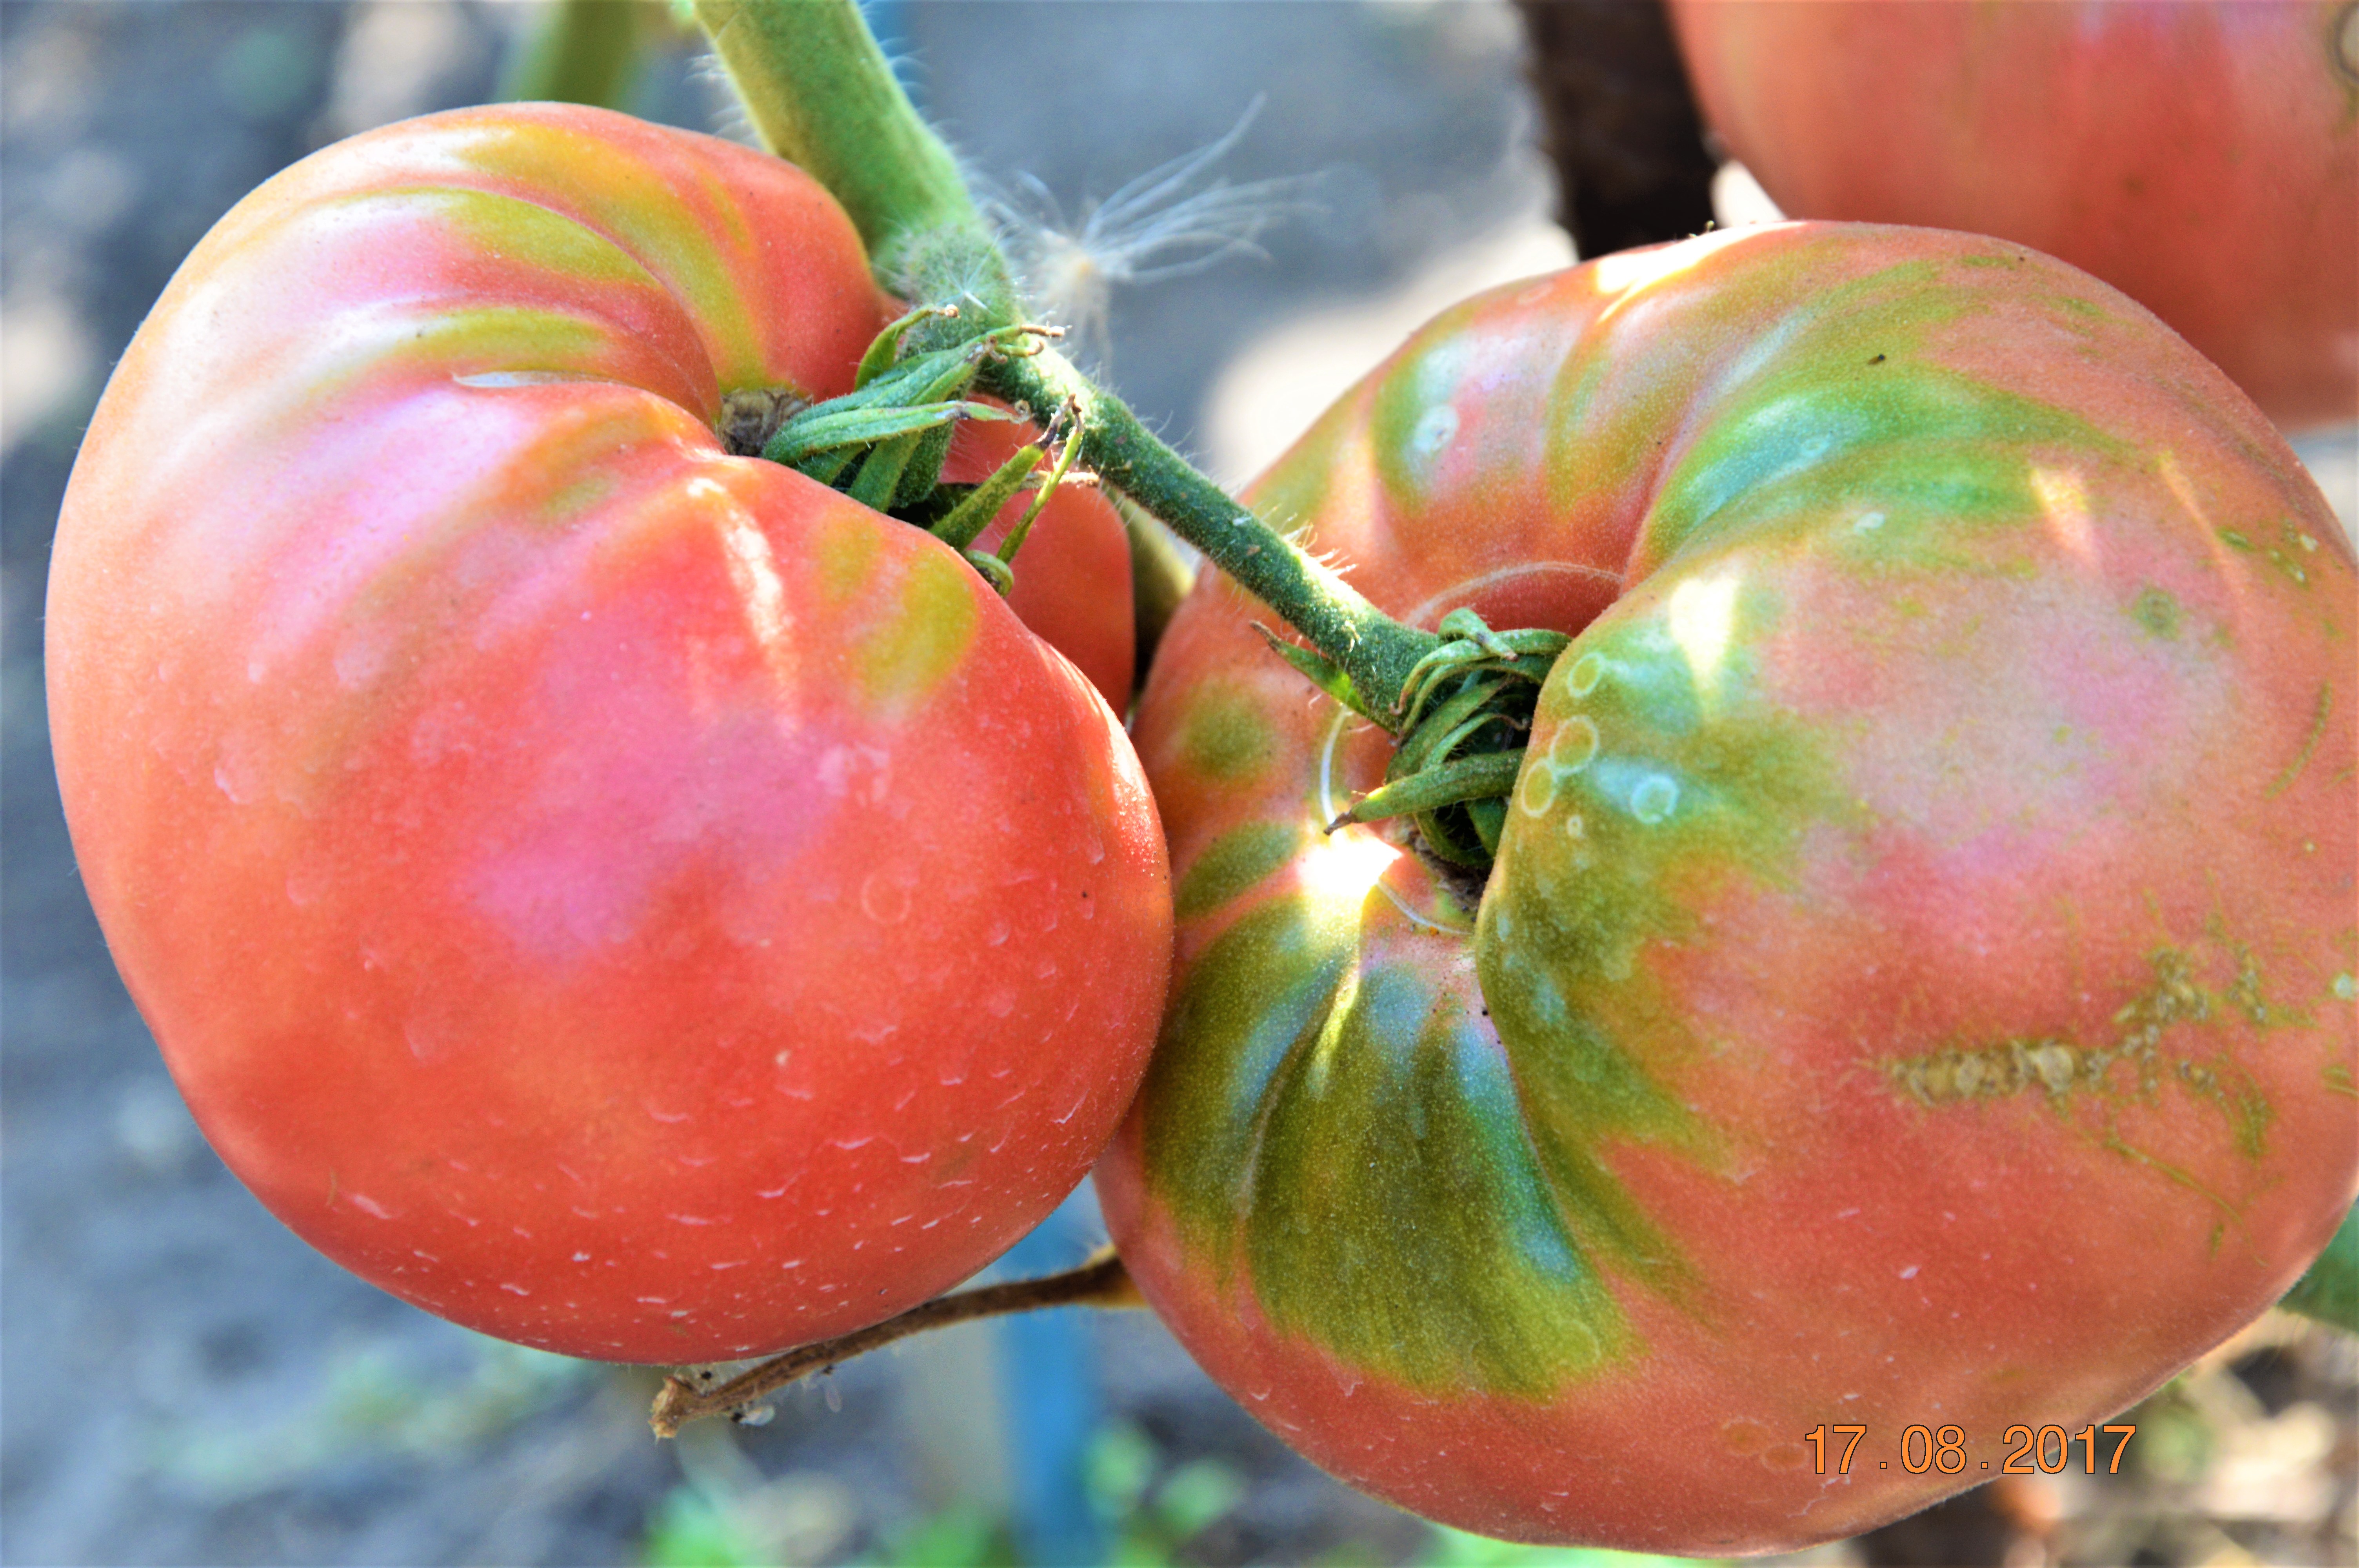 томаты берберана фото урожайность